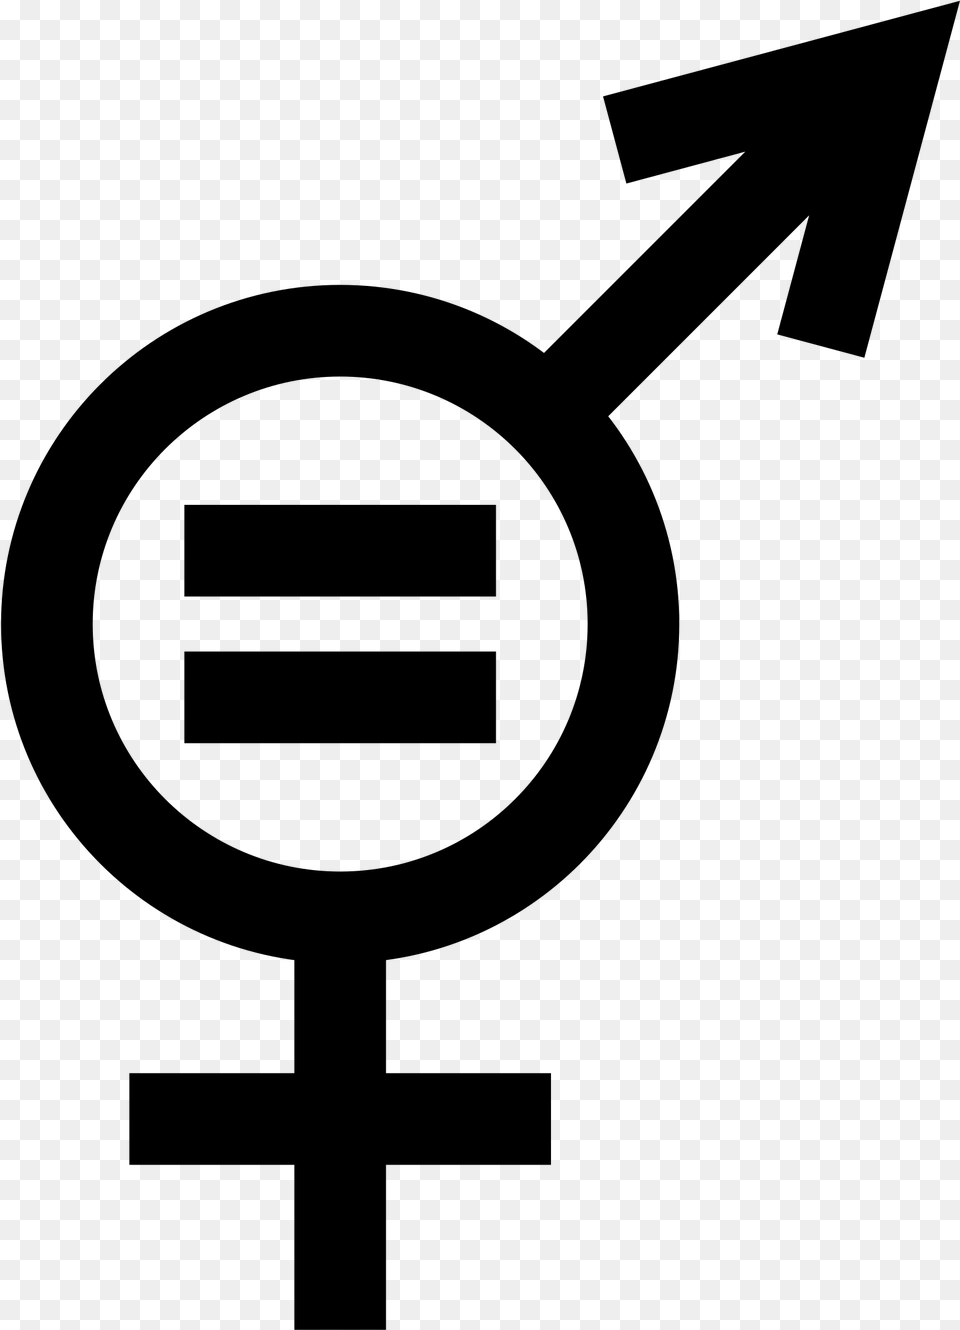 Gender Equality Symbol Gender Based Division Of Labor Symbol, Gray Free Png